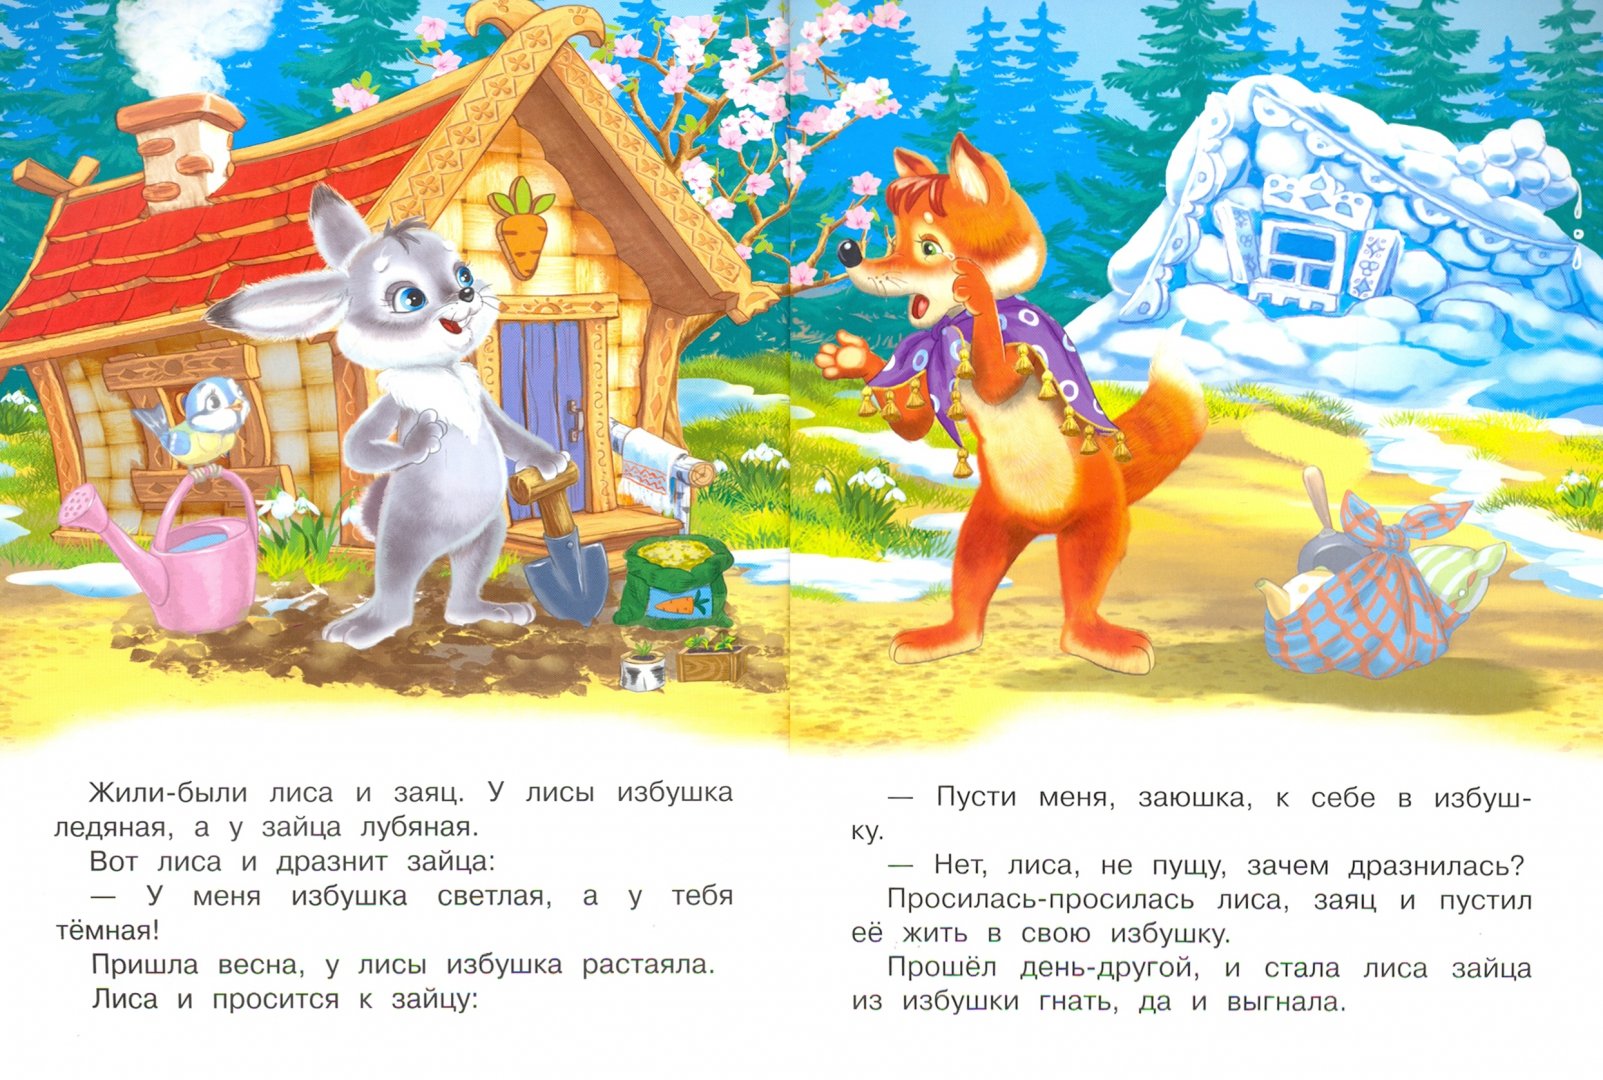 ✅ главная мысль сказки лиса и заяц. сказка "заяц и лиса" - произведение для самых маленьких - radostvsem.ru